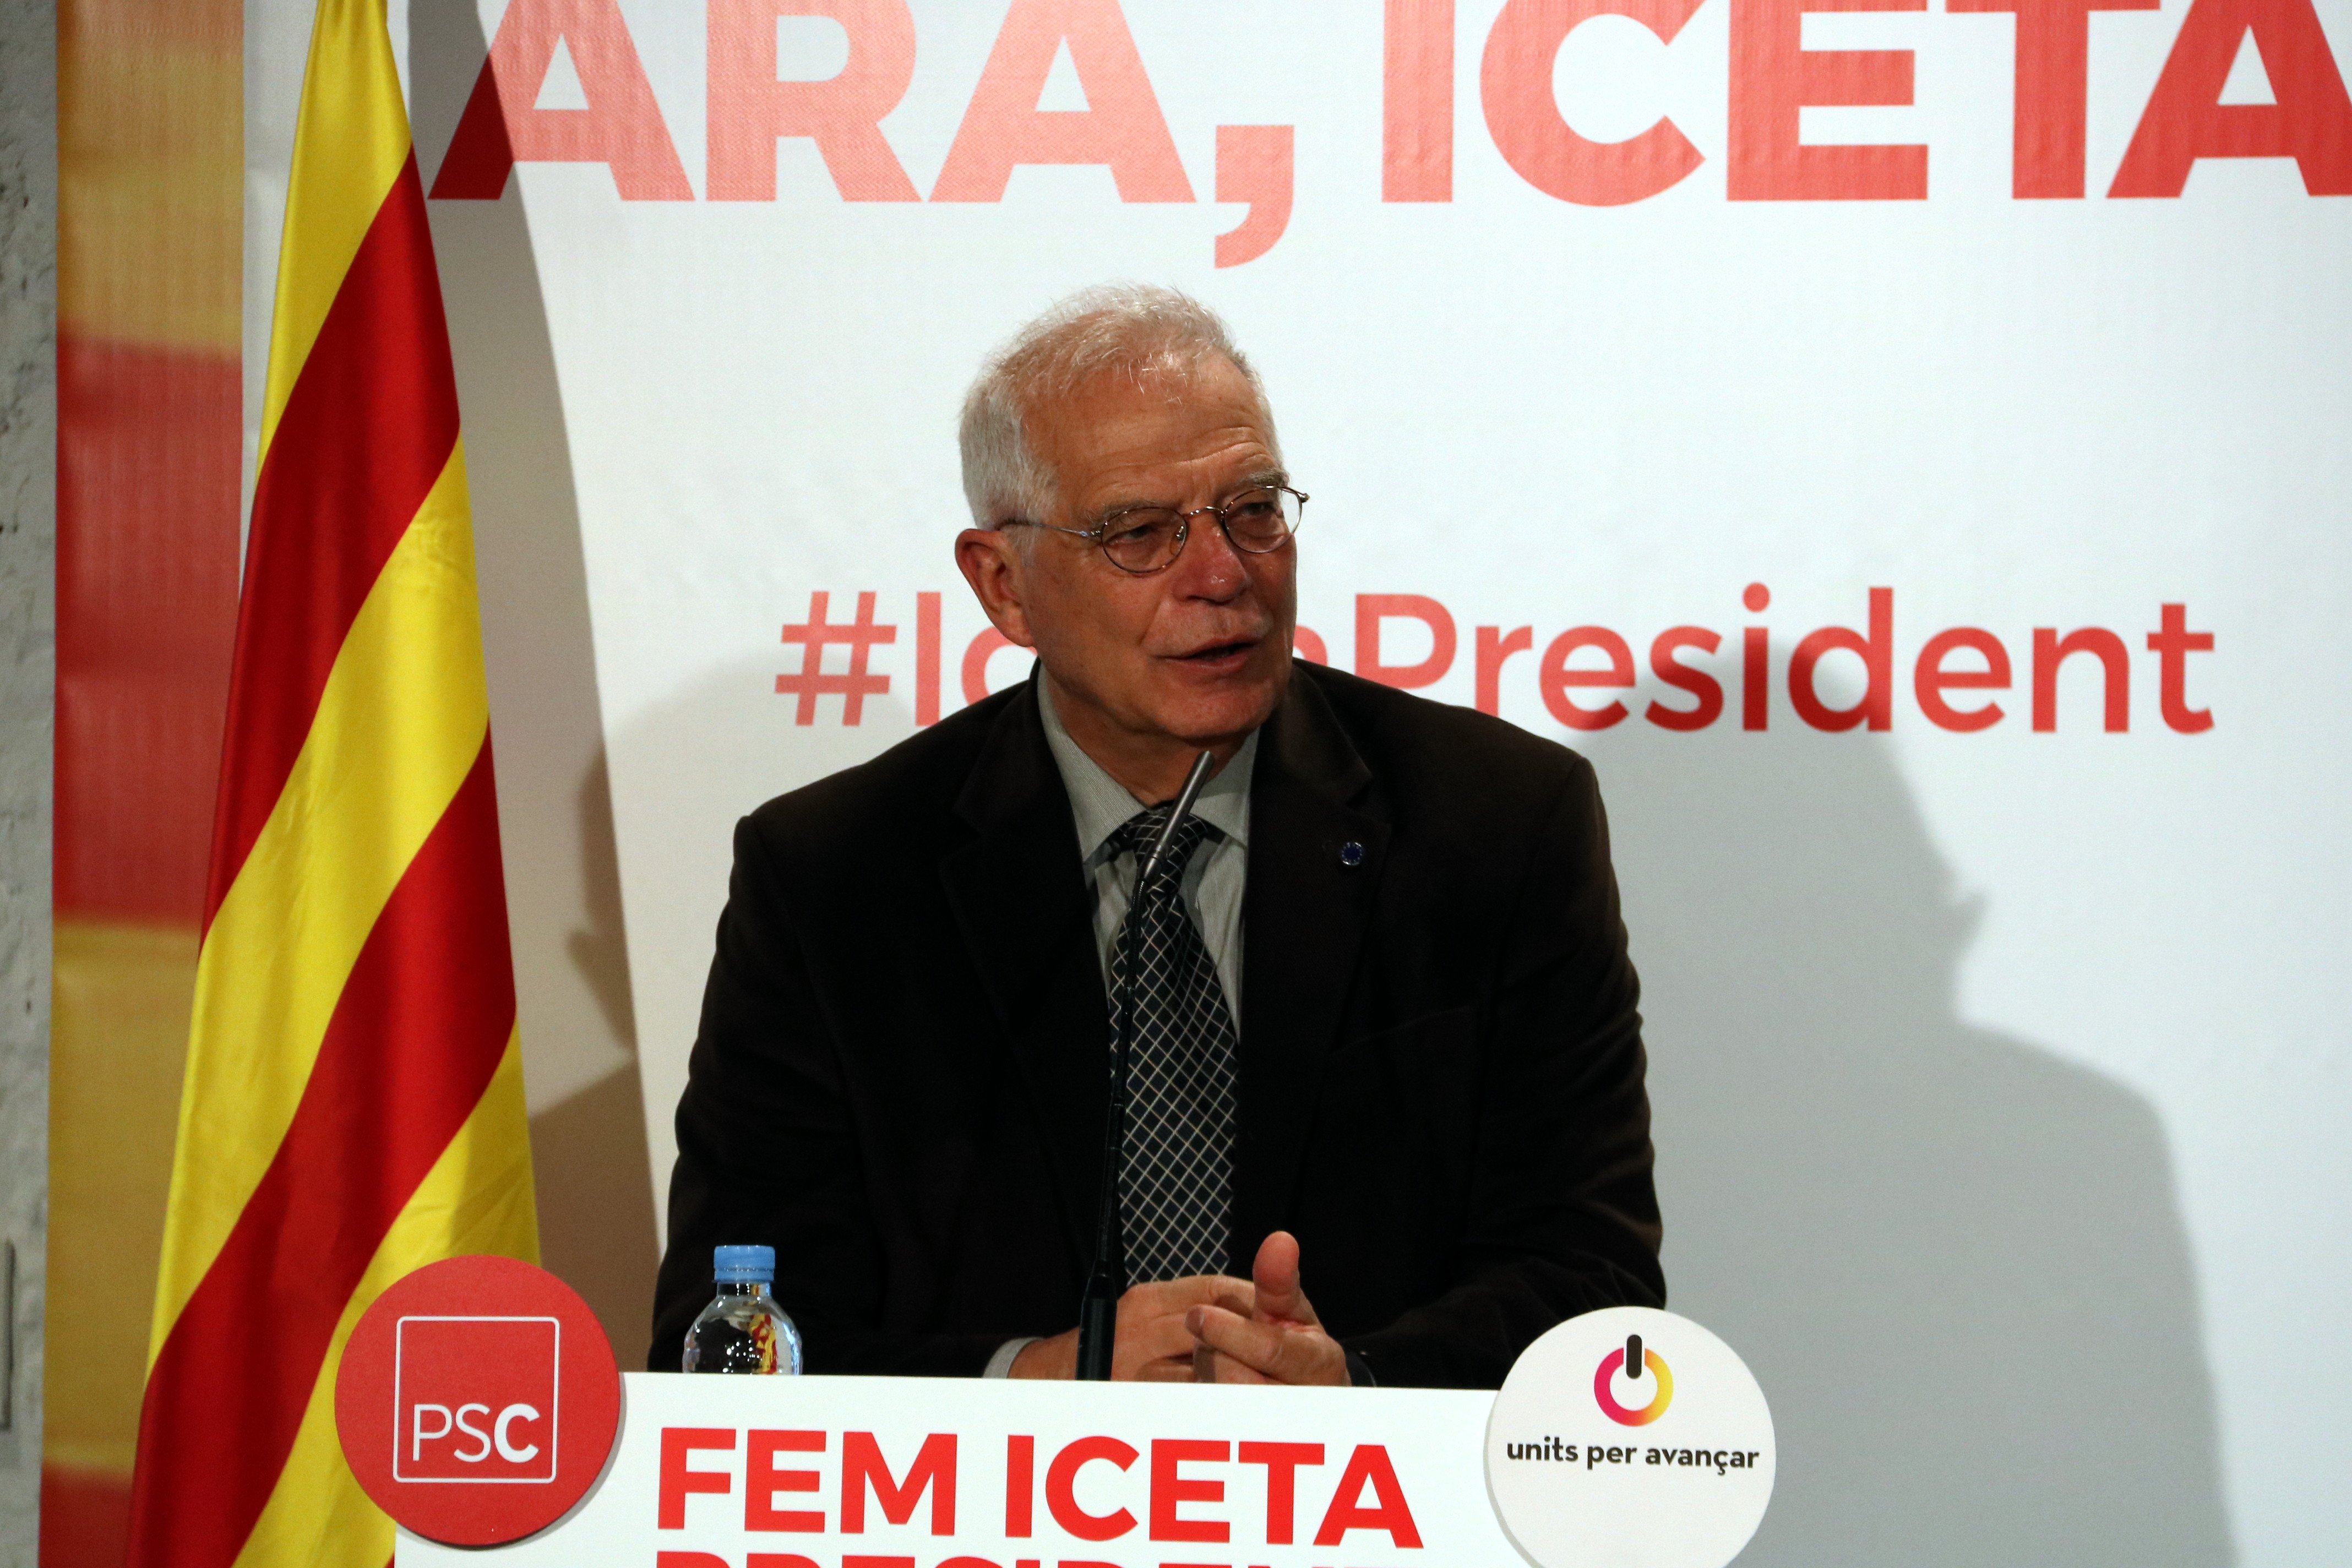 Borrell avisa: "Si seguim capficats amb la independència arribarem a les mans"